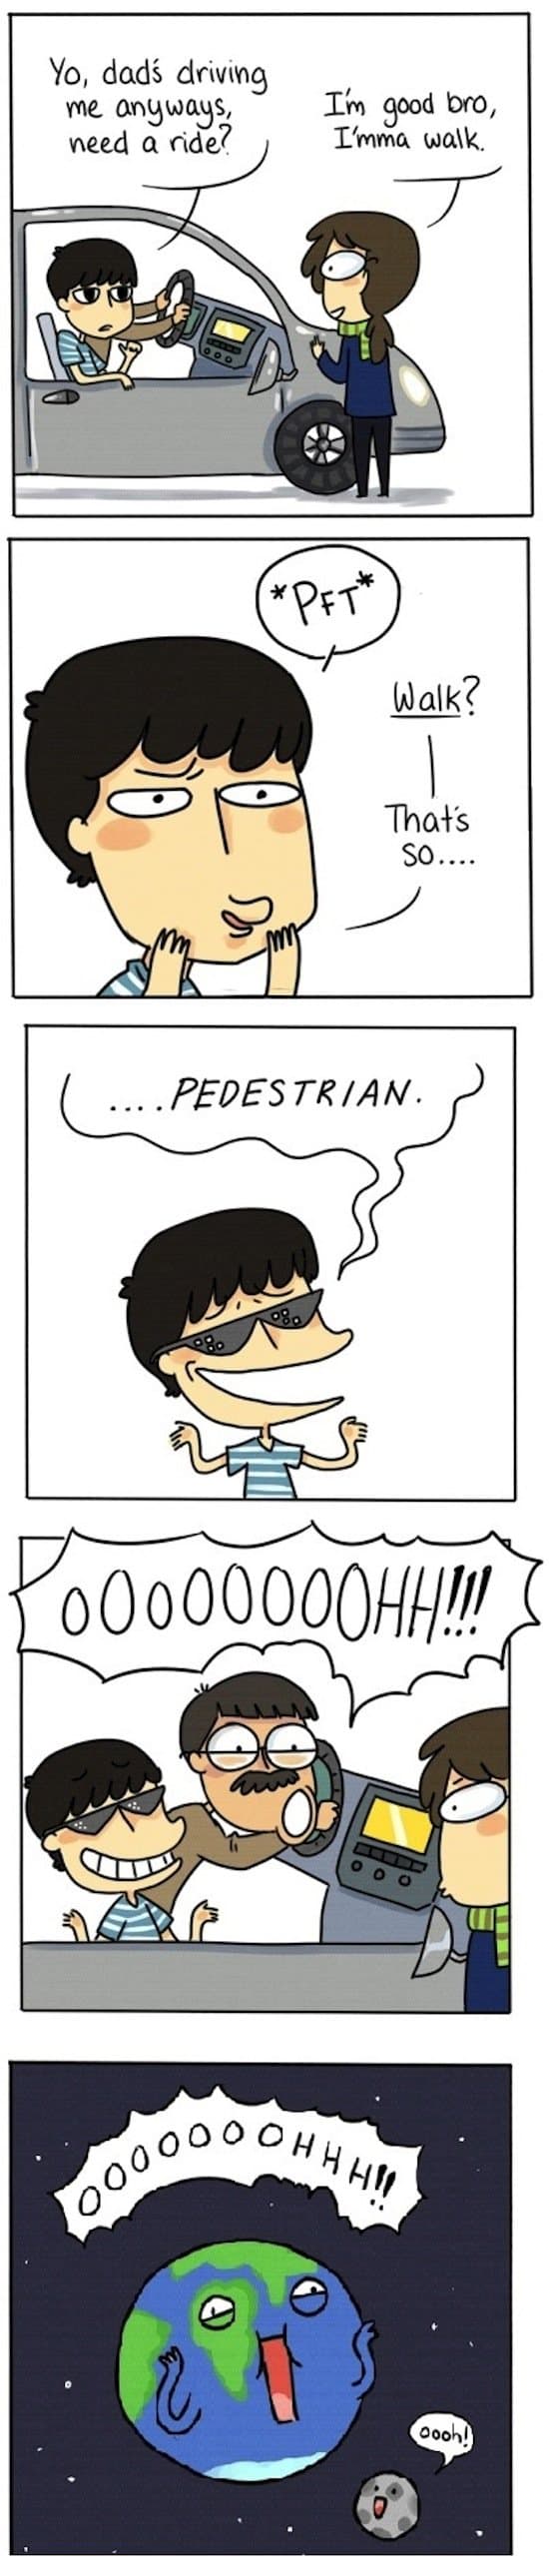 joke-pedestrian